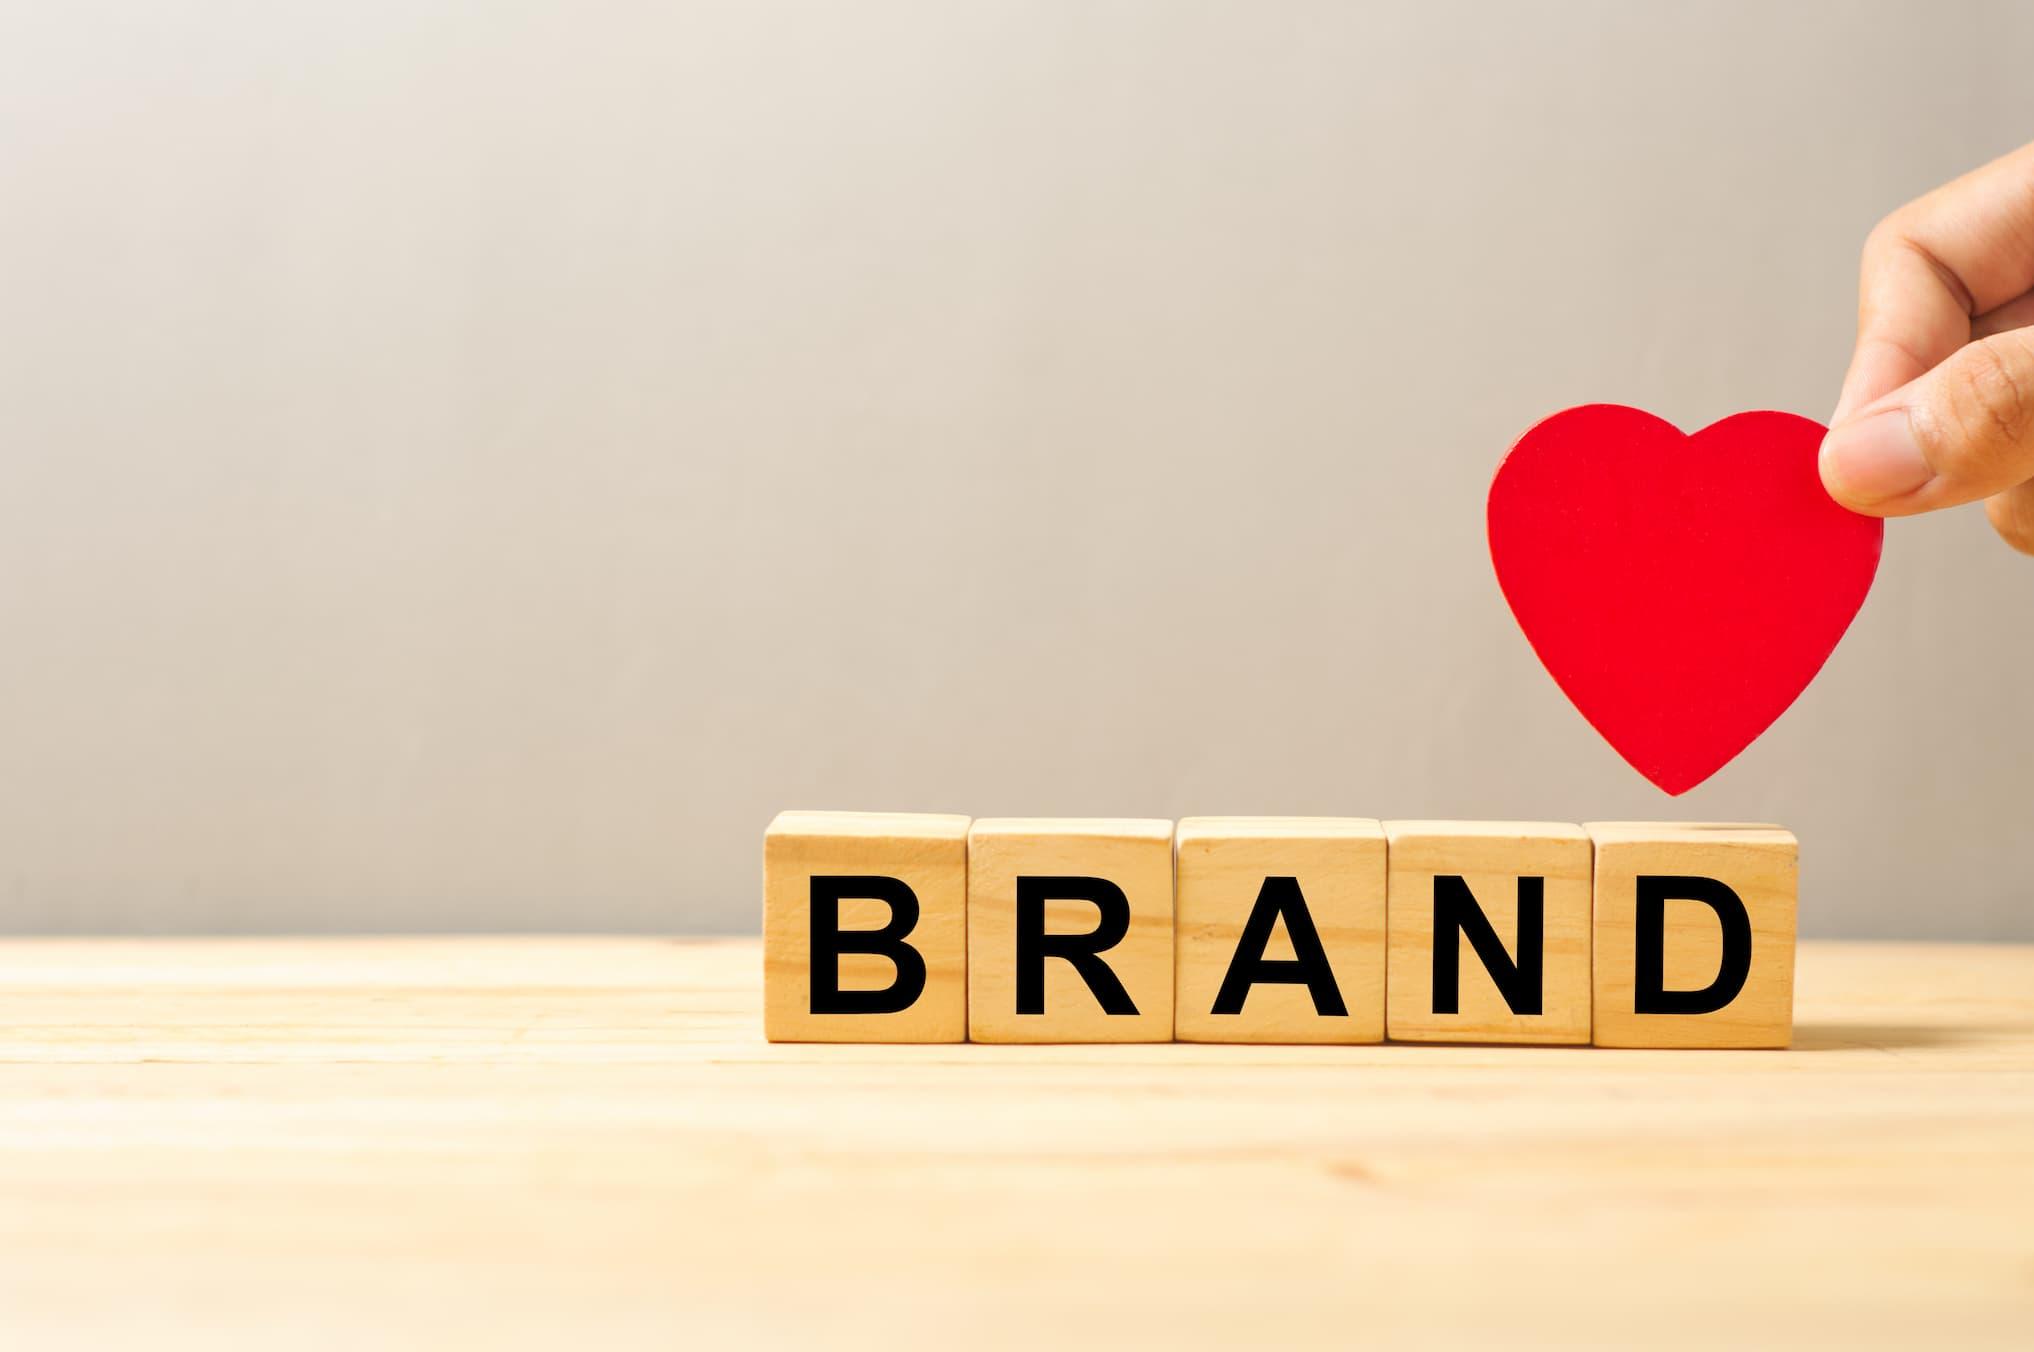 Sebrae Minas - Tudo sobre Branding: como diferenciar seu negócio rumo ao sucesso